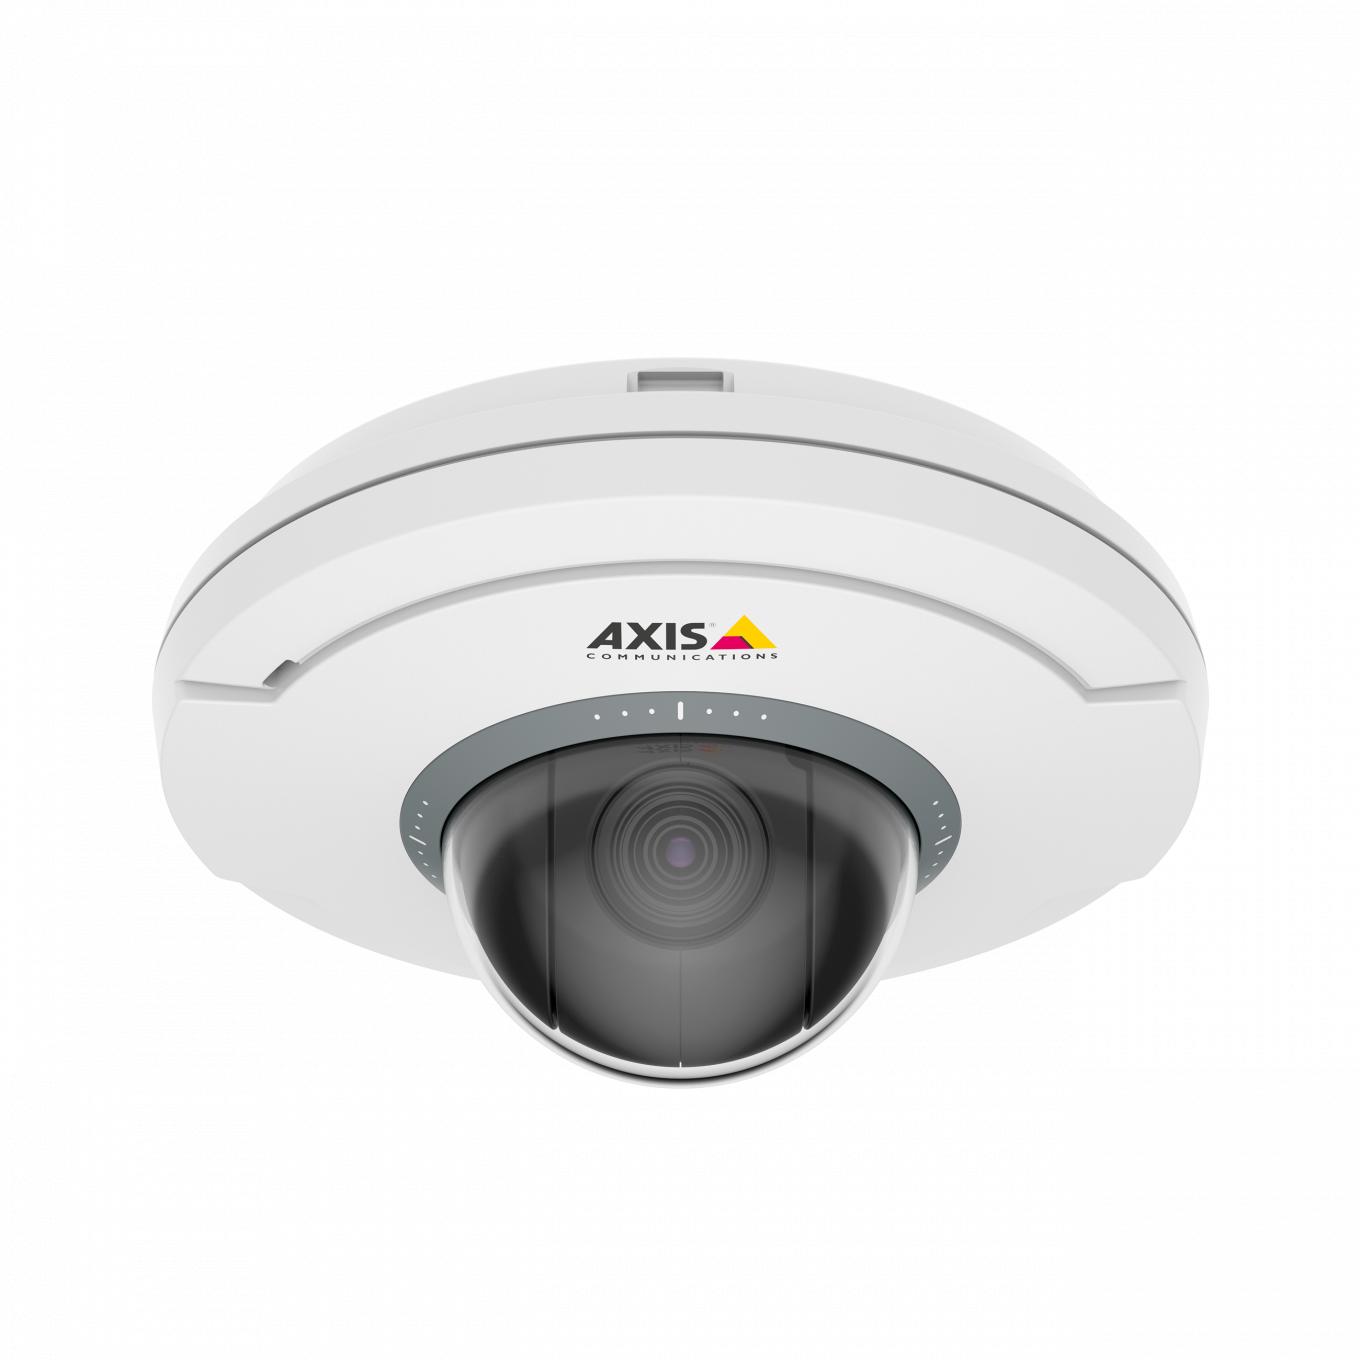 Czarno-biała kamera AXIS M5075 z logo Axis, widok z przodu